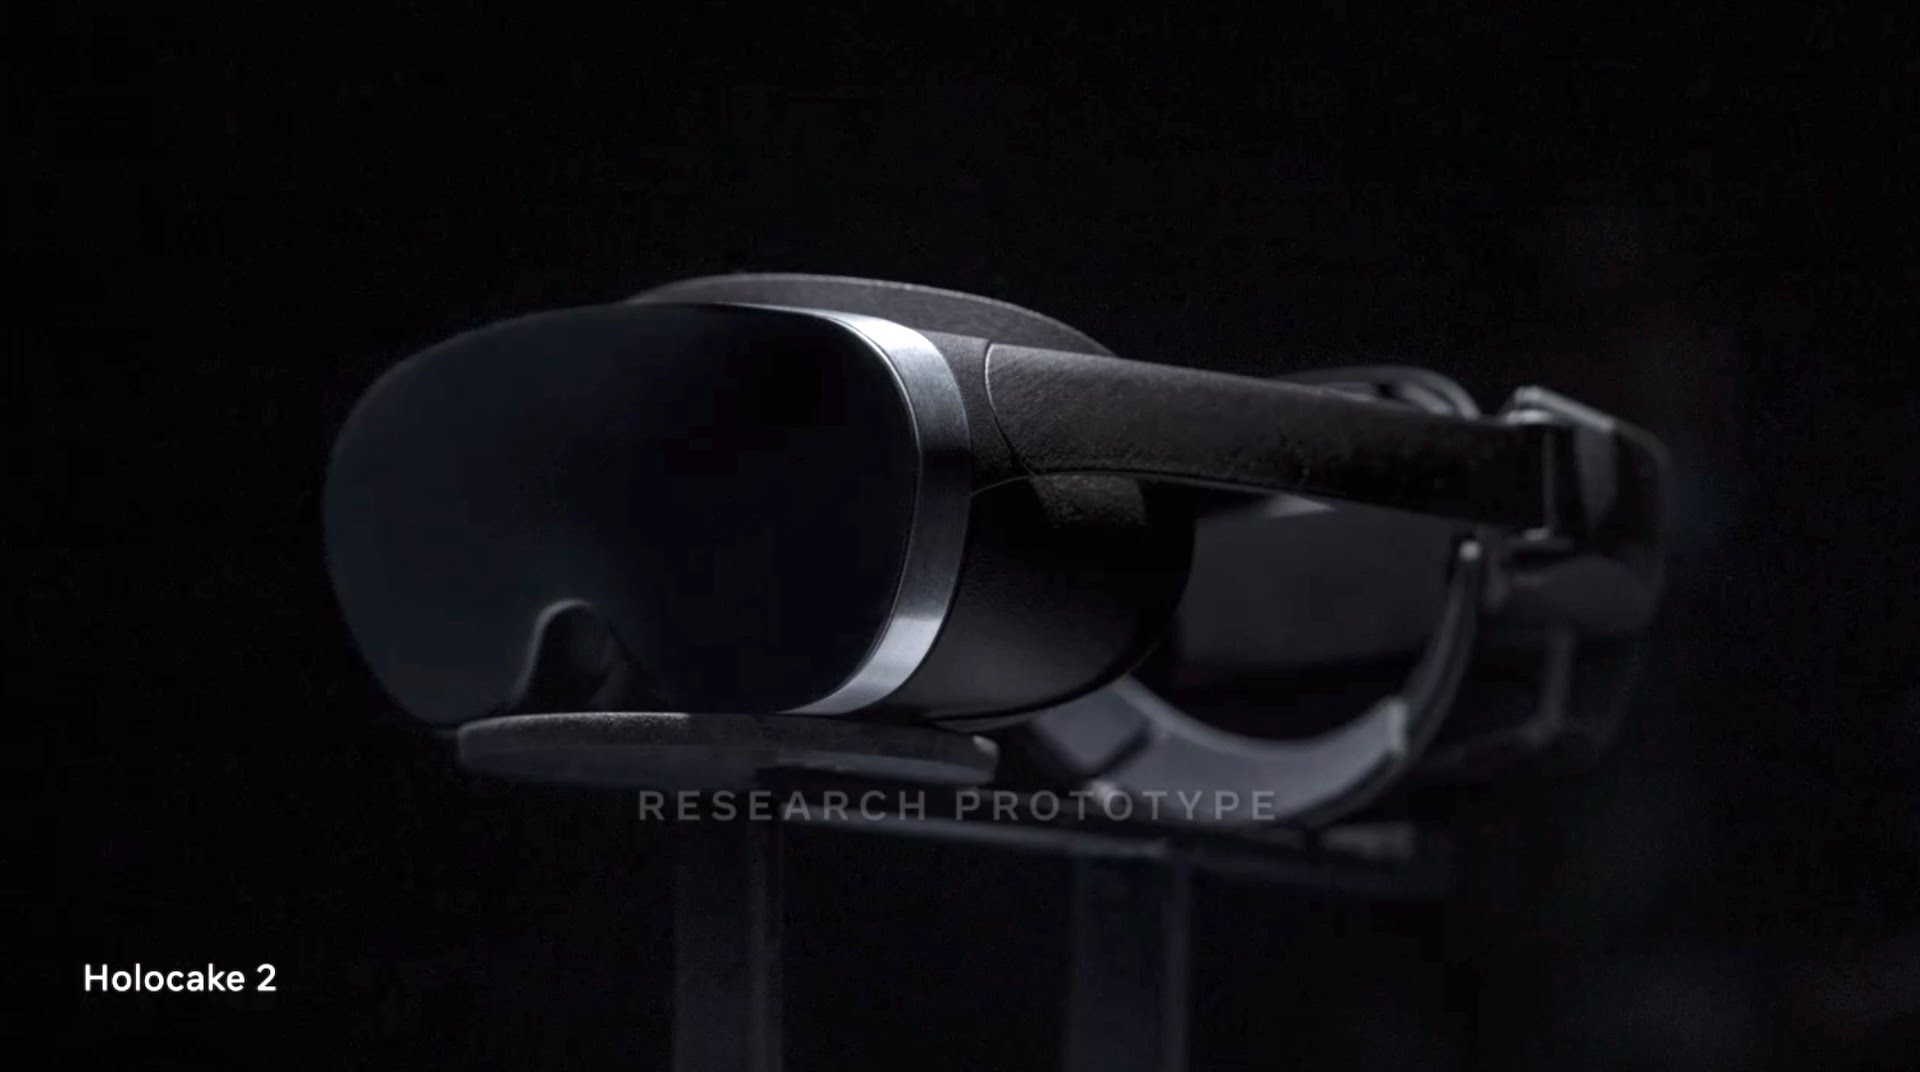 Metas futuristische VR-Technik: Wann kommt sie auf den Markt?